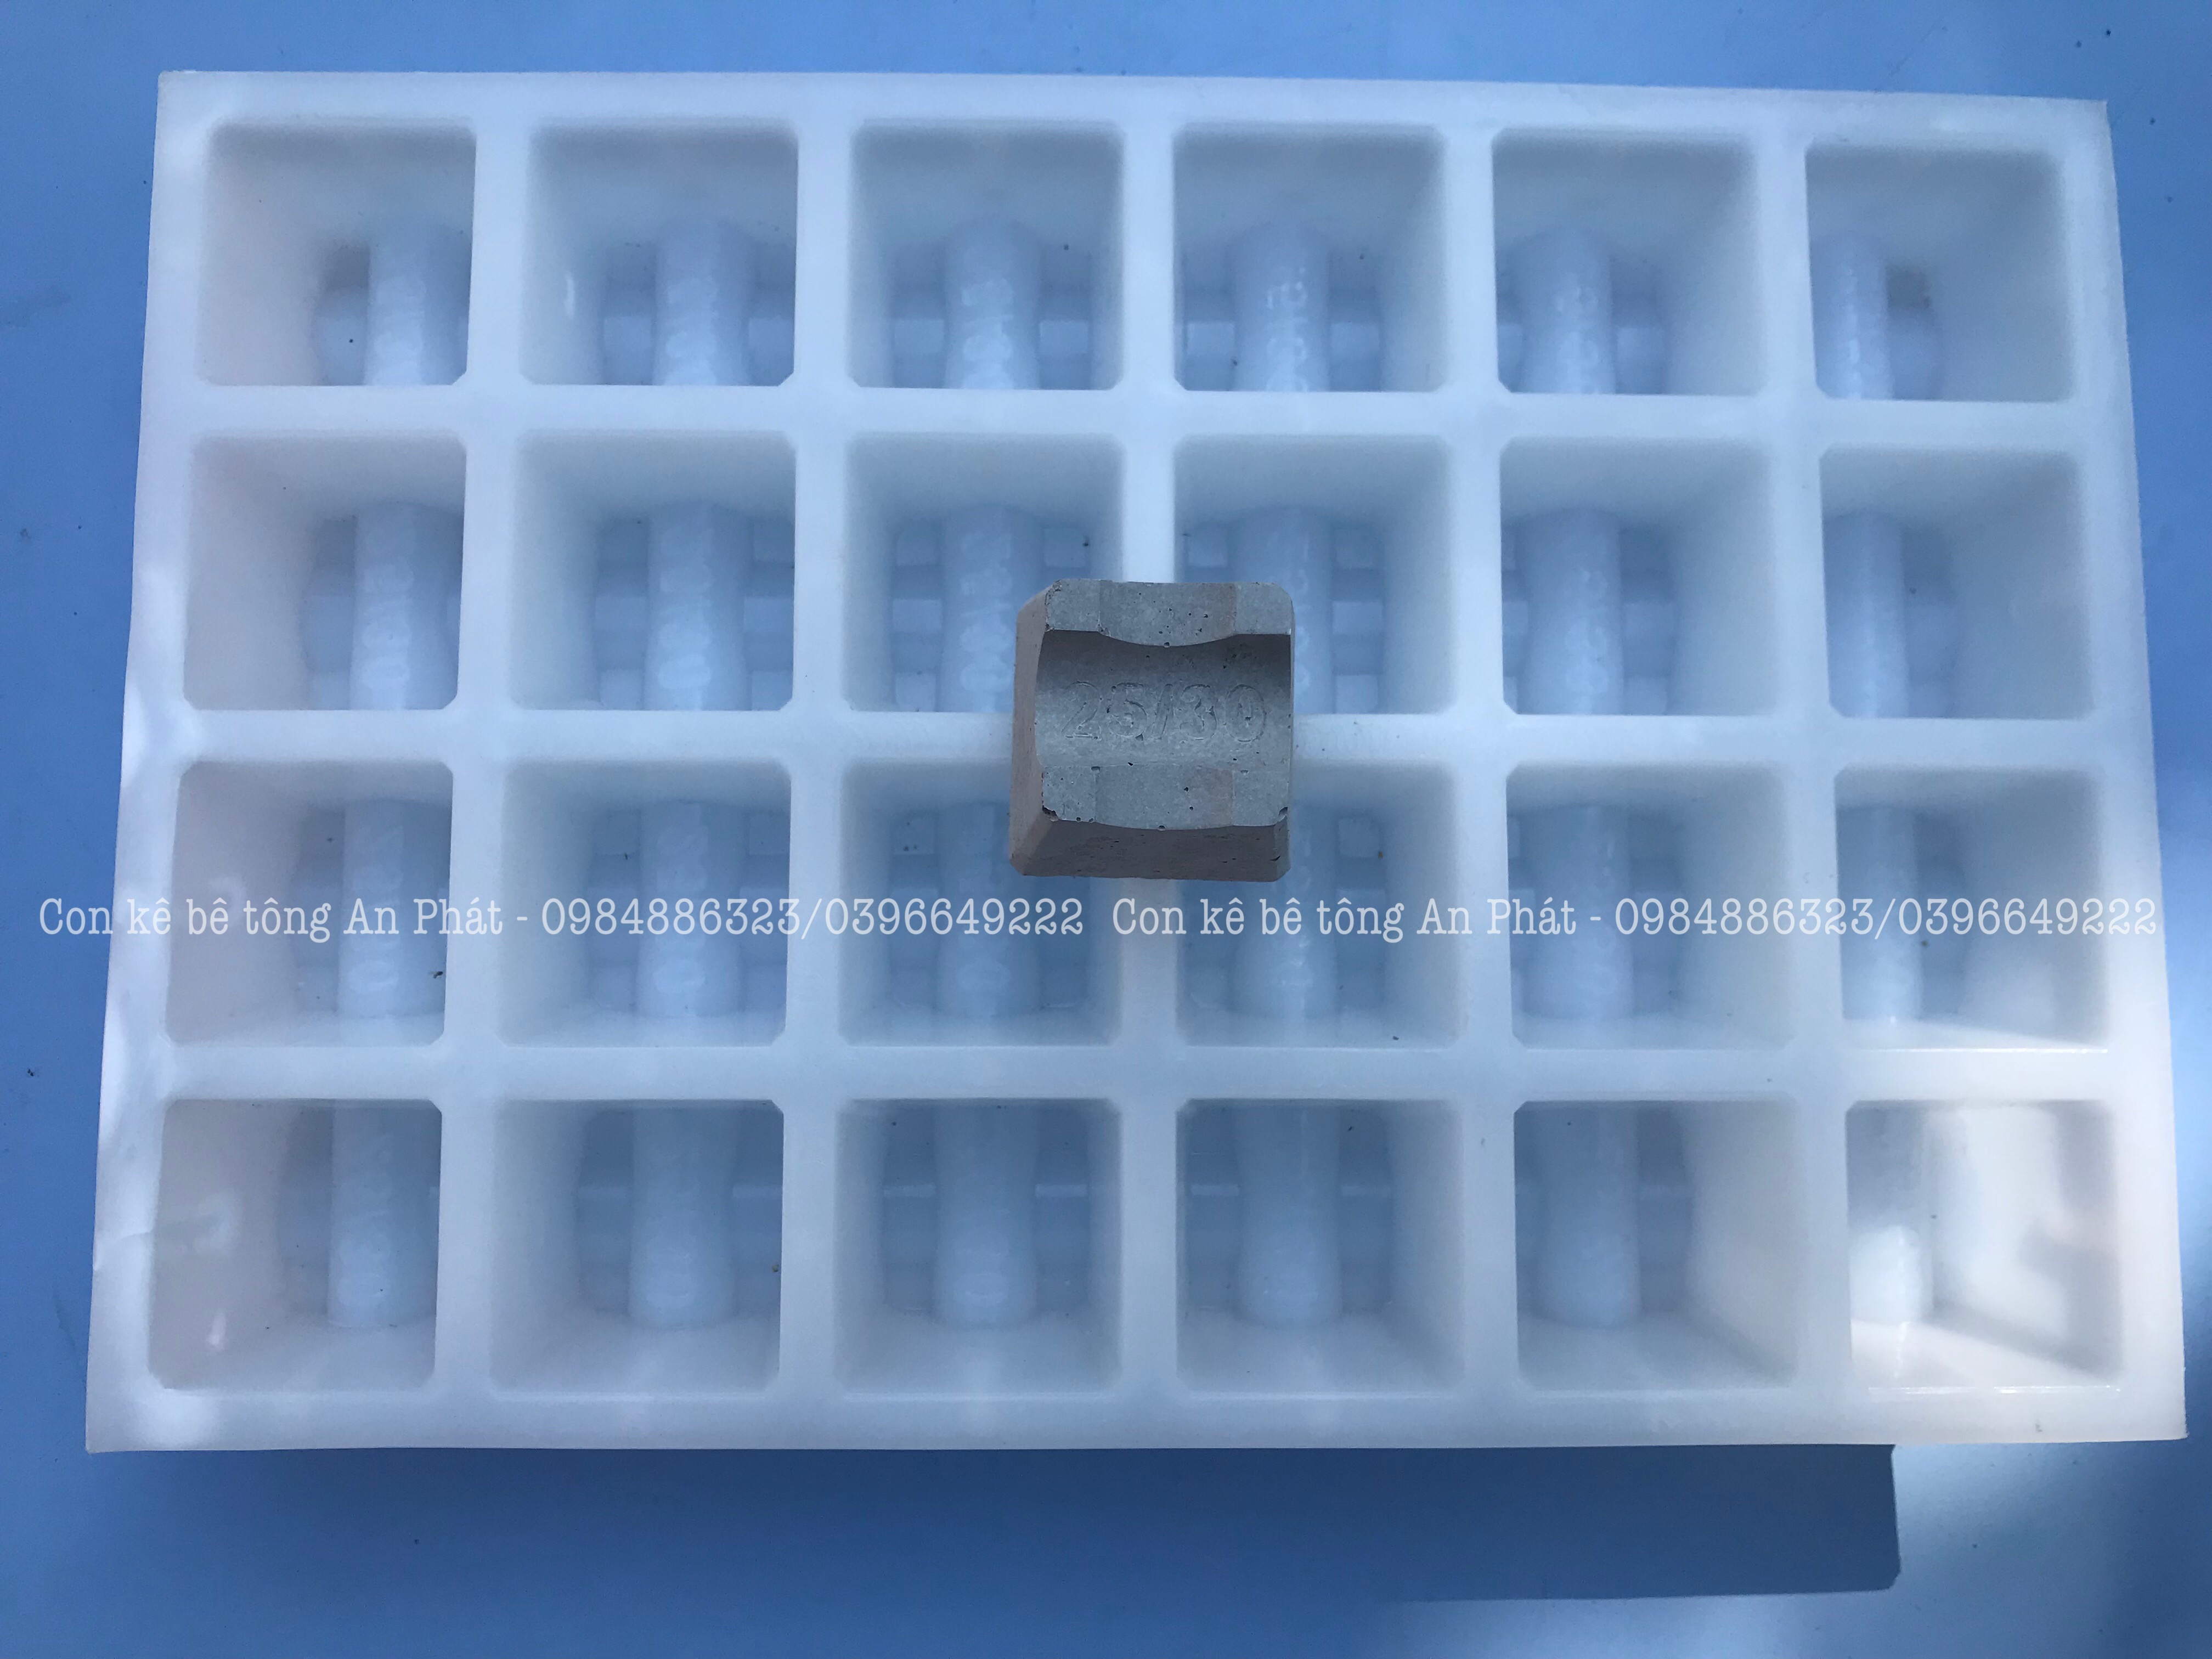 Khuôn nhựa đúc con kê bê tông V3(25/30mm) dùng cho thép sàn lớp dưới siêu bền chất lượng